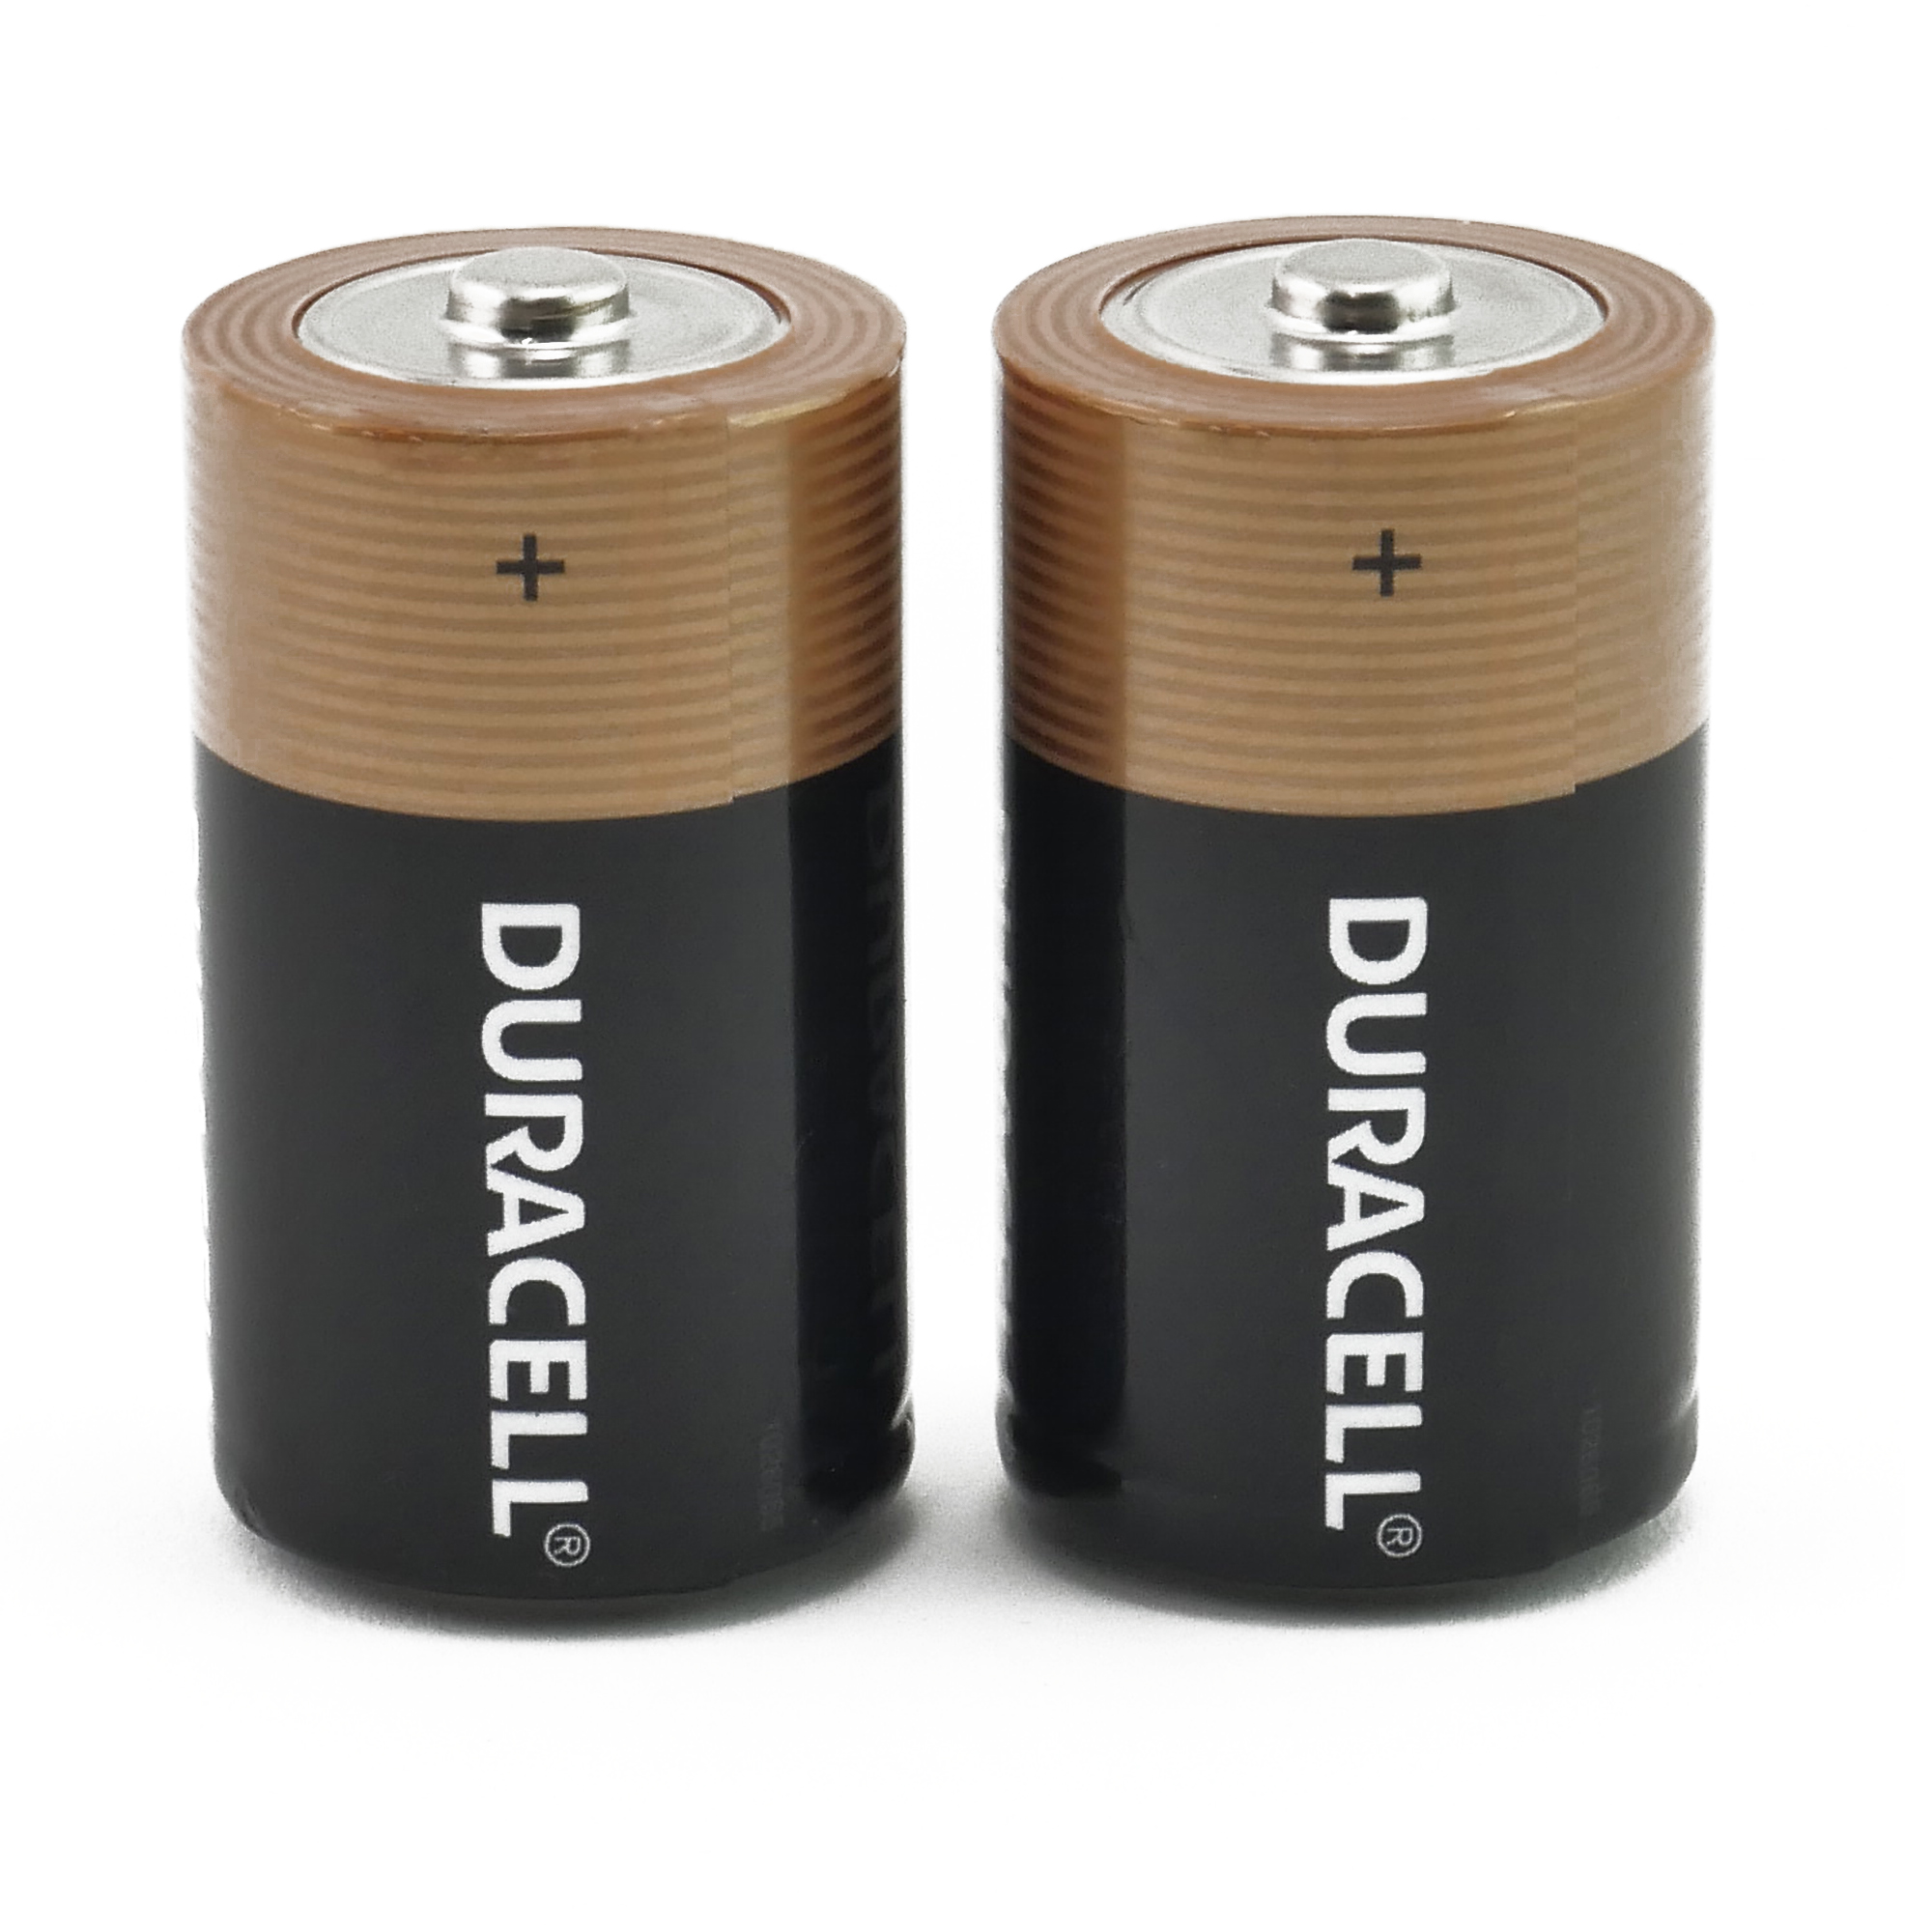 DURACELL AA Battery - DURACELL 